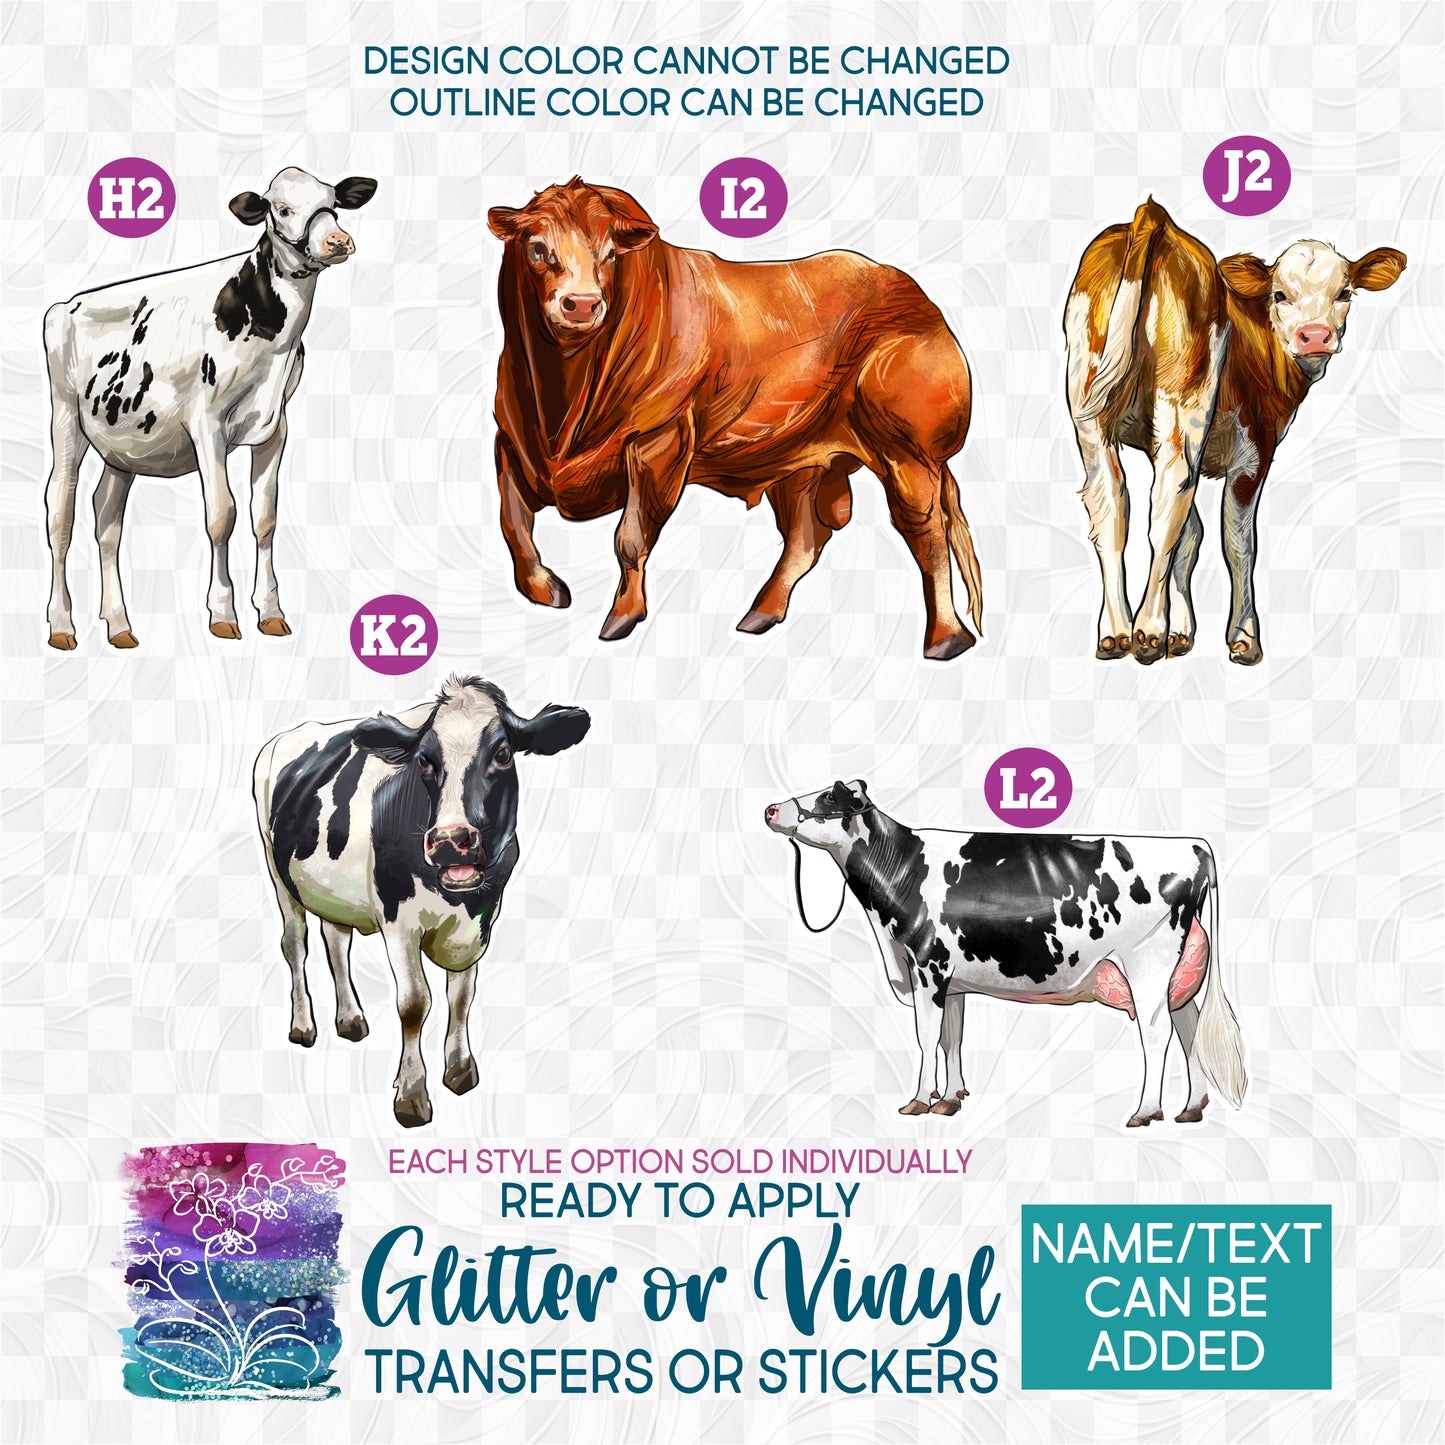 (s098-5) Cow Cows Calf Heifer Bull Cattle 4 Glitter or Vinyl Iron-On Transfer or Sticker